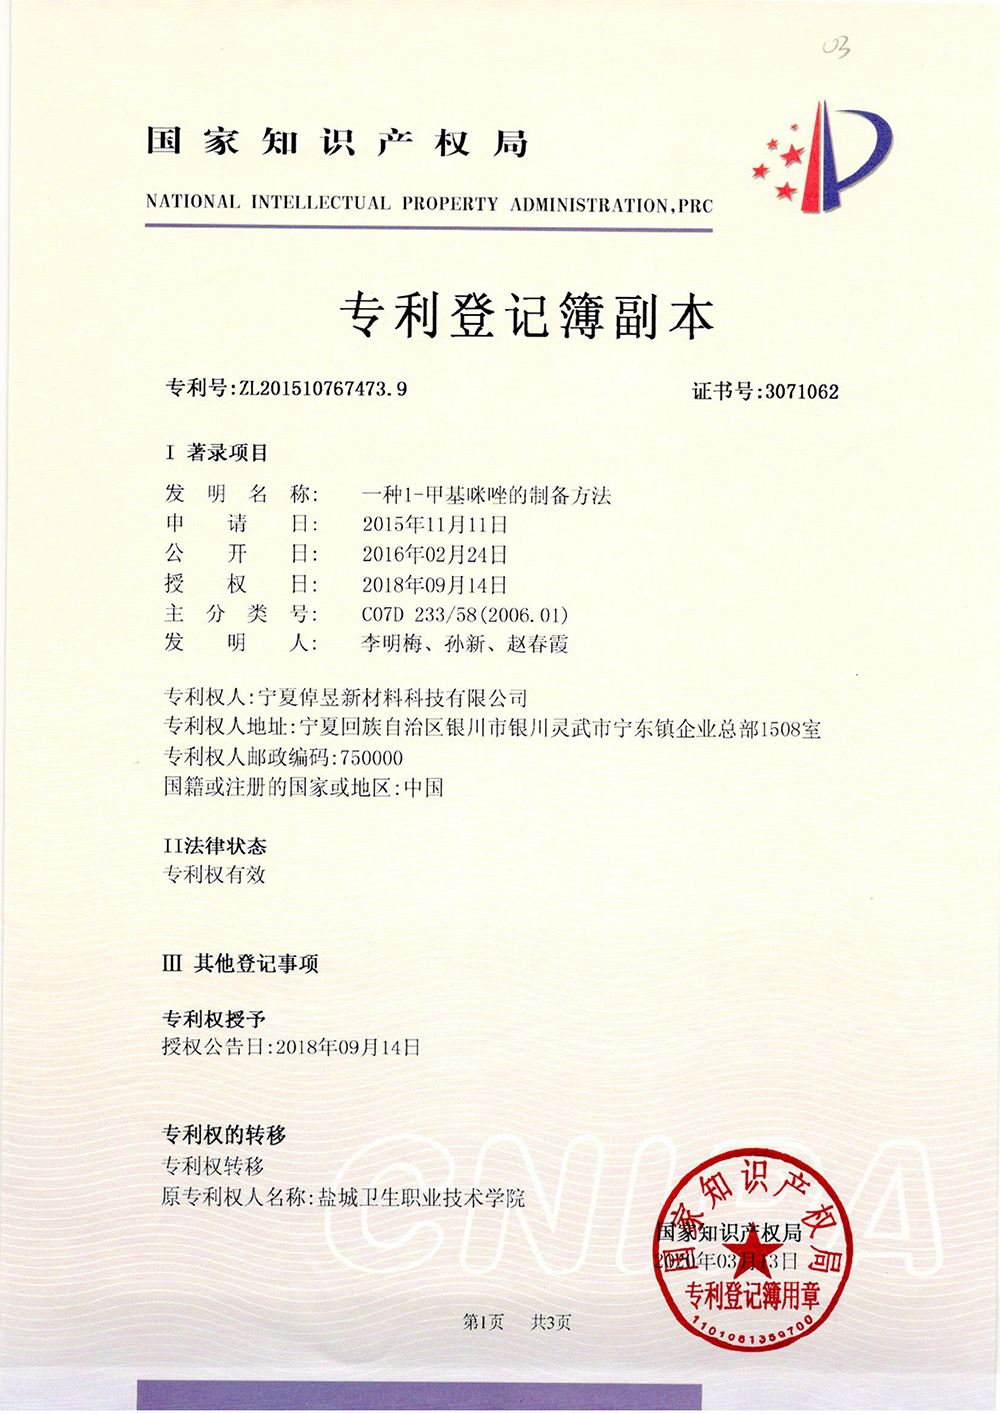 甲基咪唑的制备方法-专利部登记薄-1_上海浩登材料股份有限公司